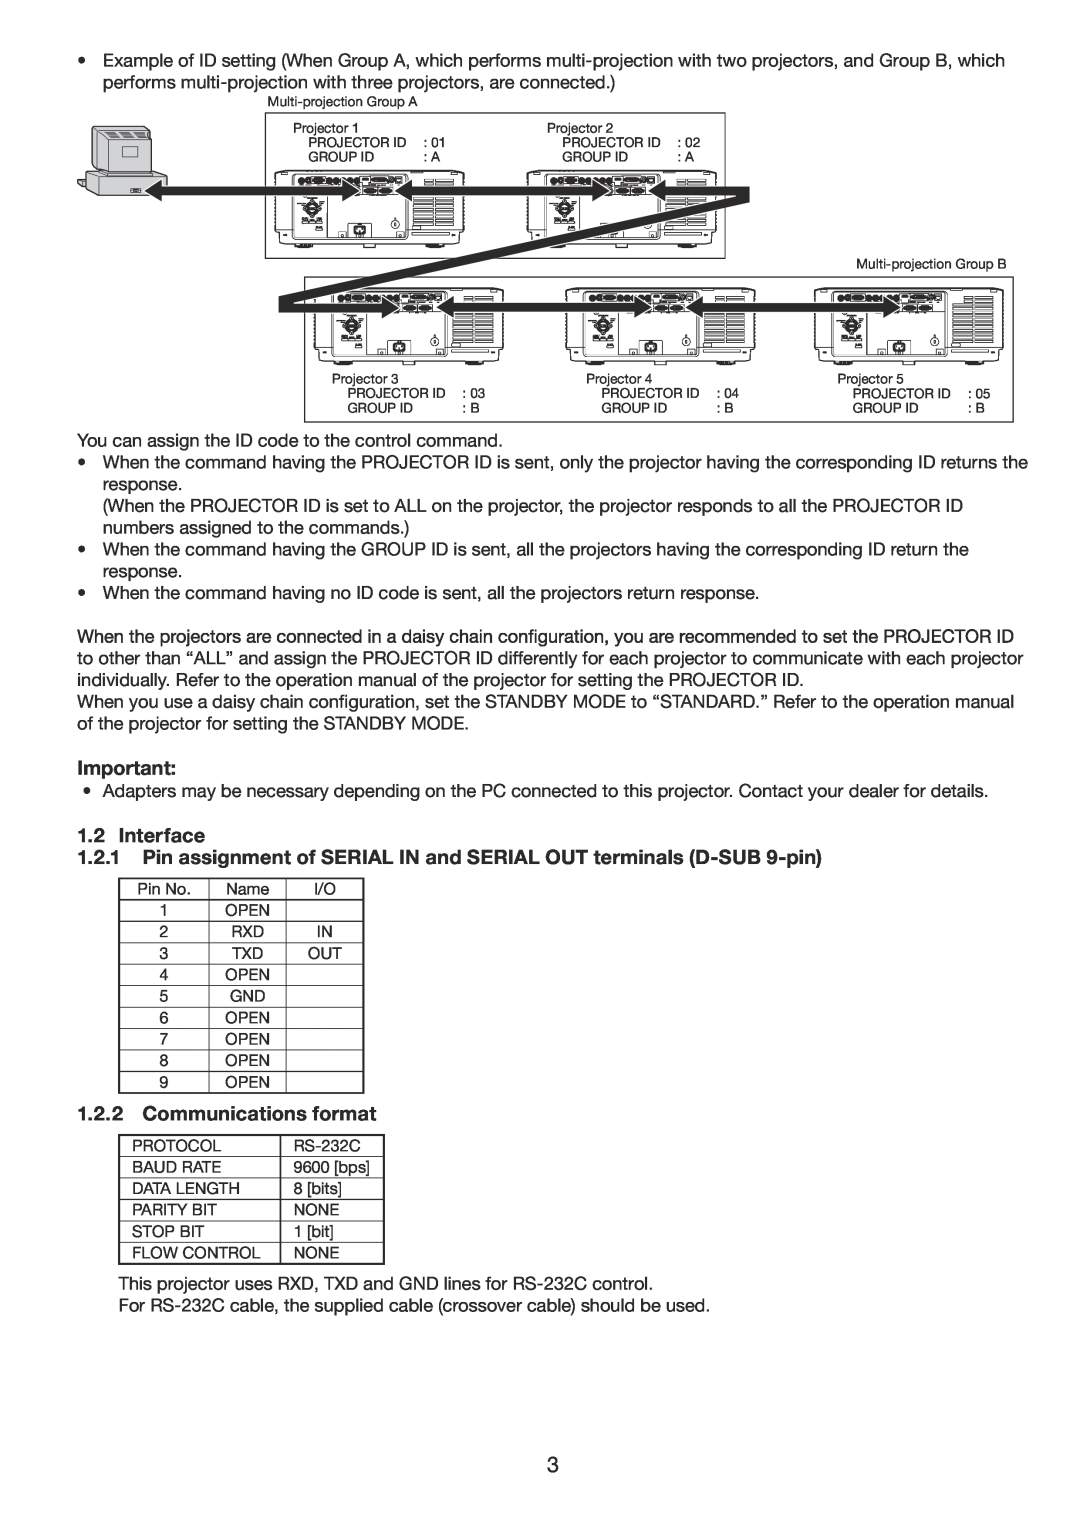 Mitsubishi Electronics UD8900U, UD8850U manual Interface, Communications format 